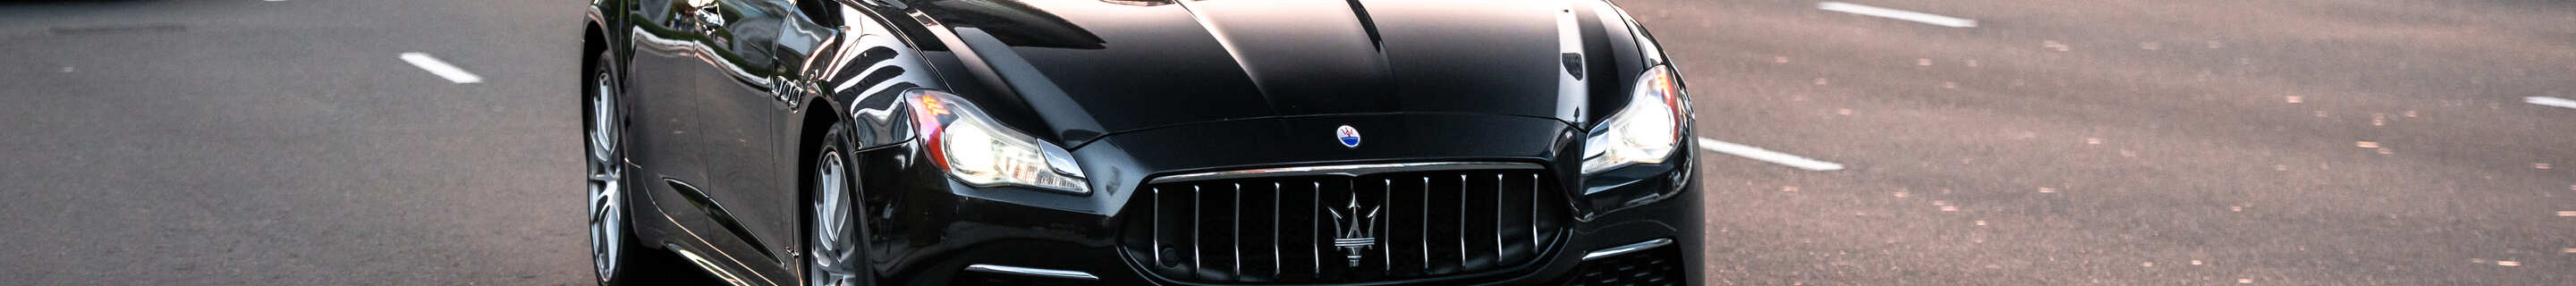 Maserati Quattroporte Diesel GranLusso